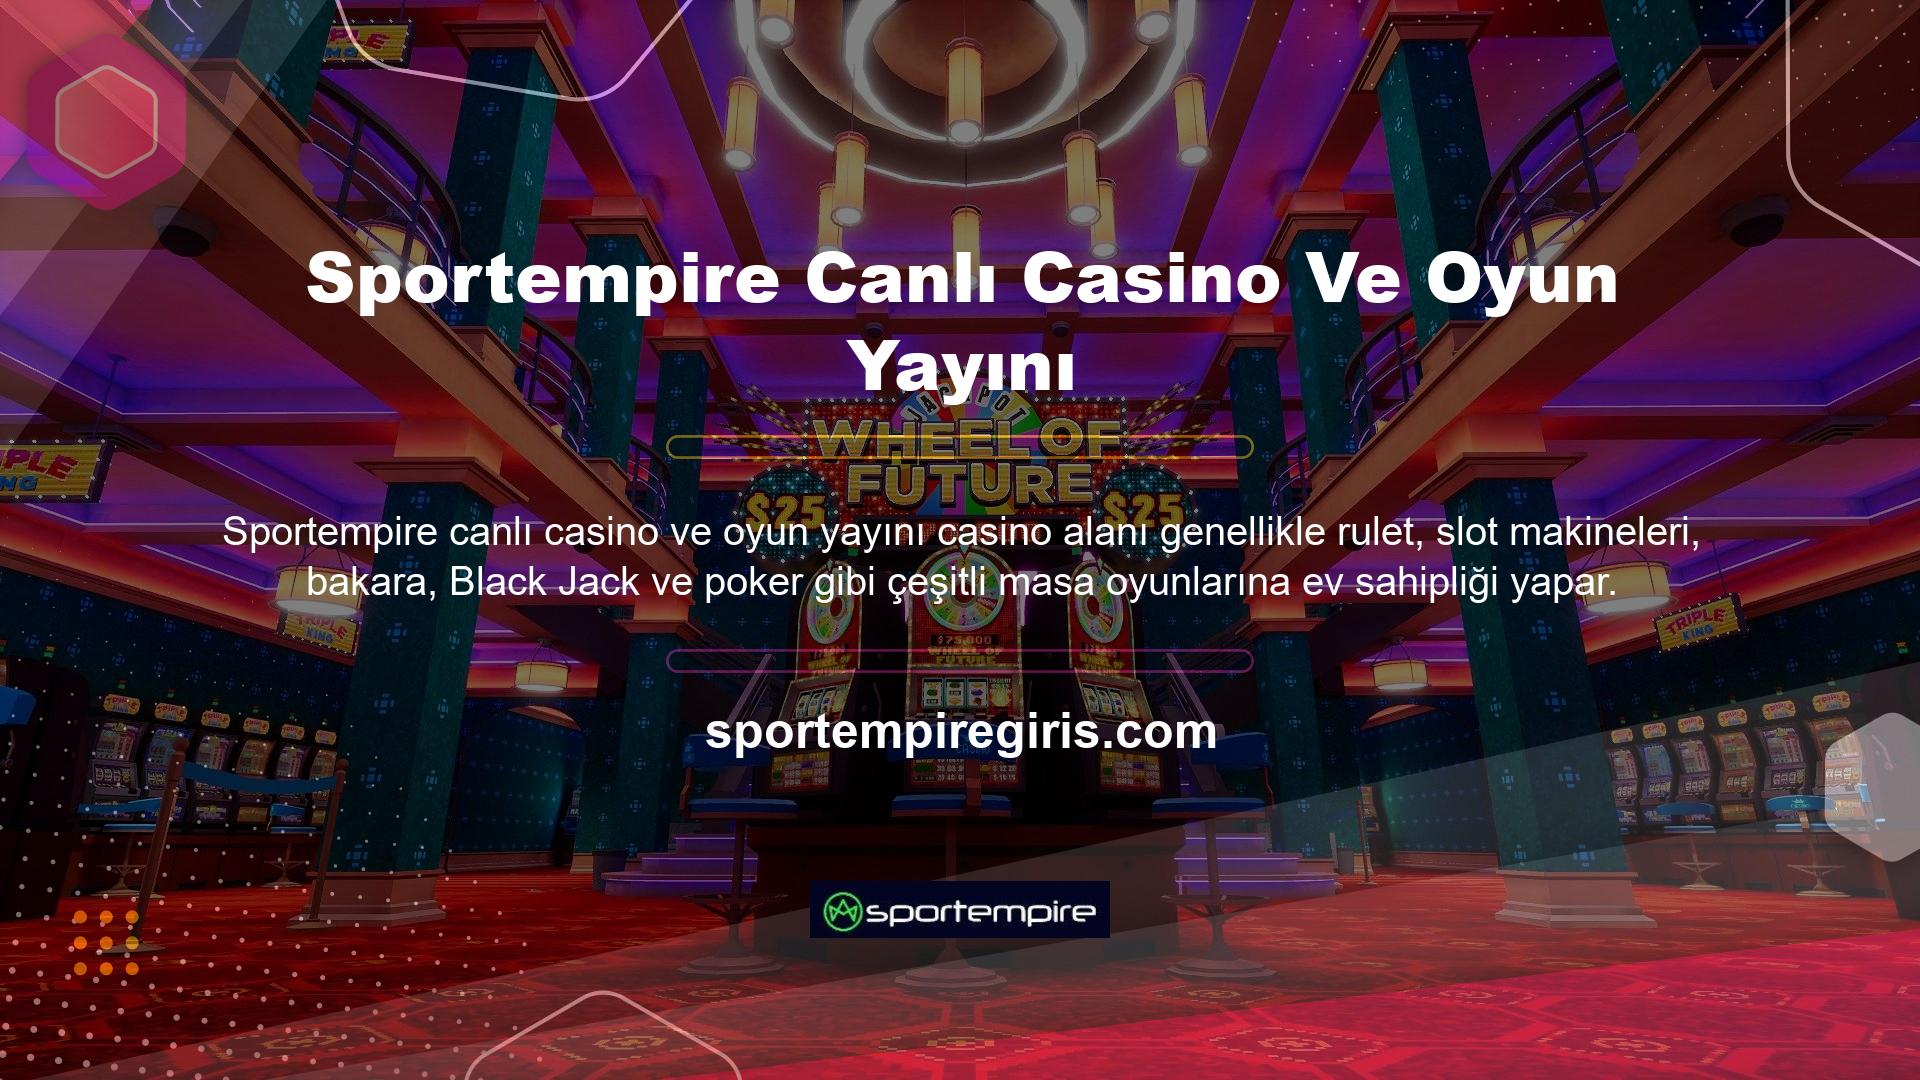 Çok sayıda slot makinesinin yer aldığı canlı casino alanında rulet, bakara ve Black Jack gibi çeşitli oyunlar oynanmaktadır